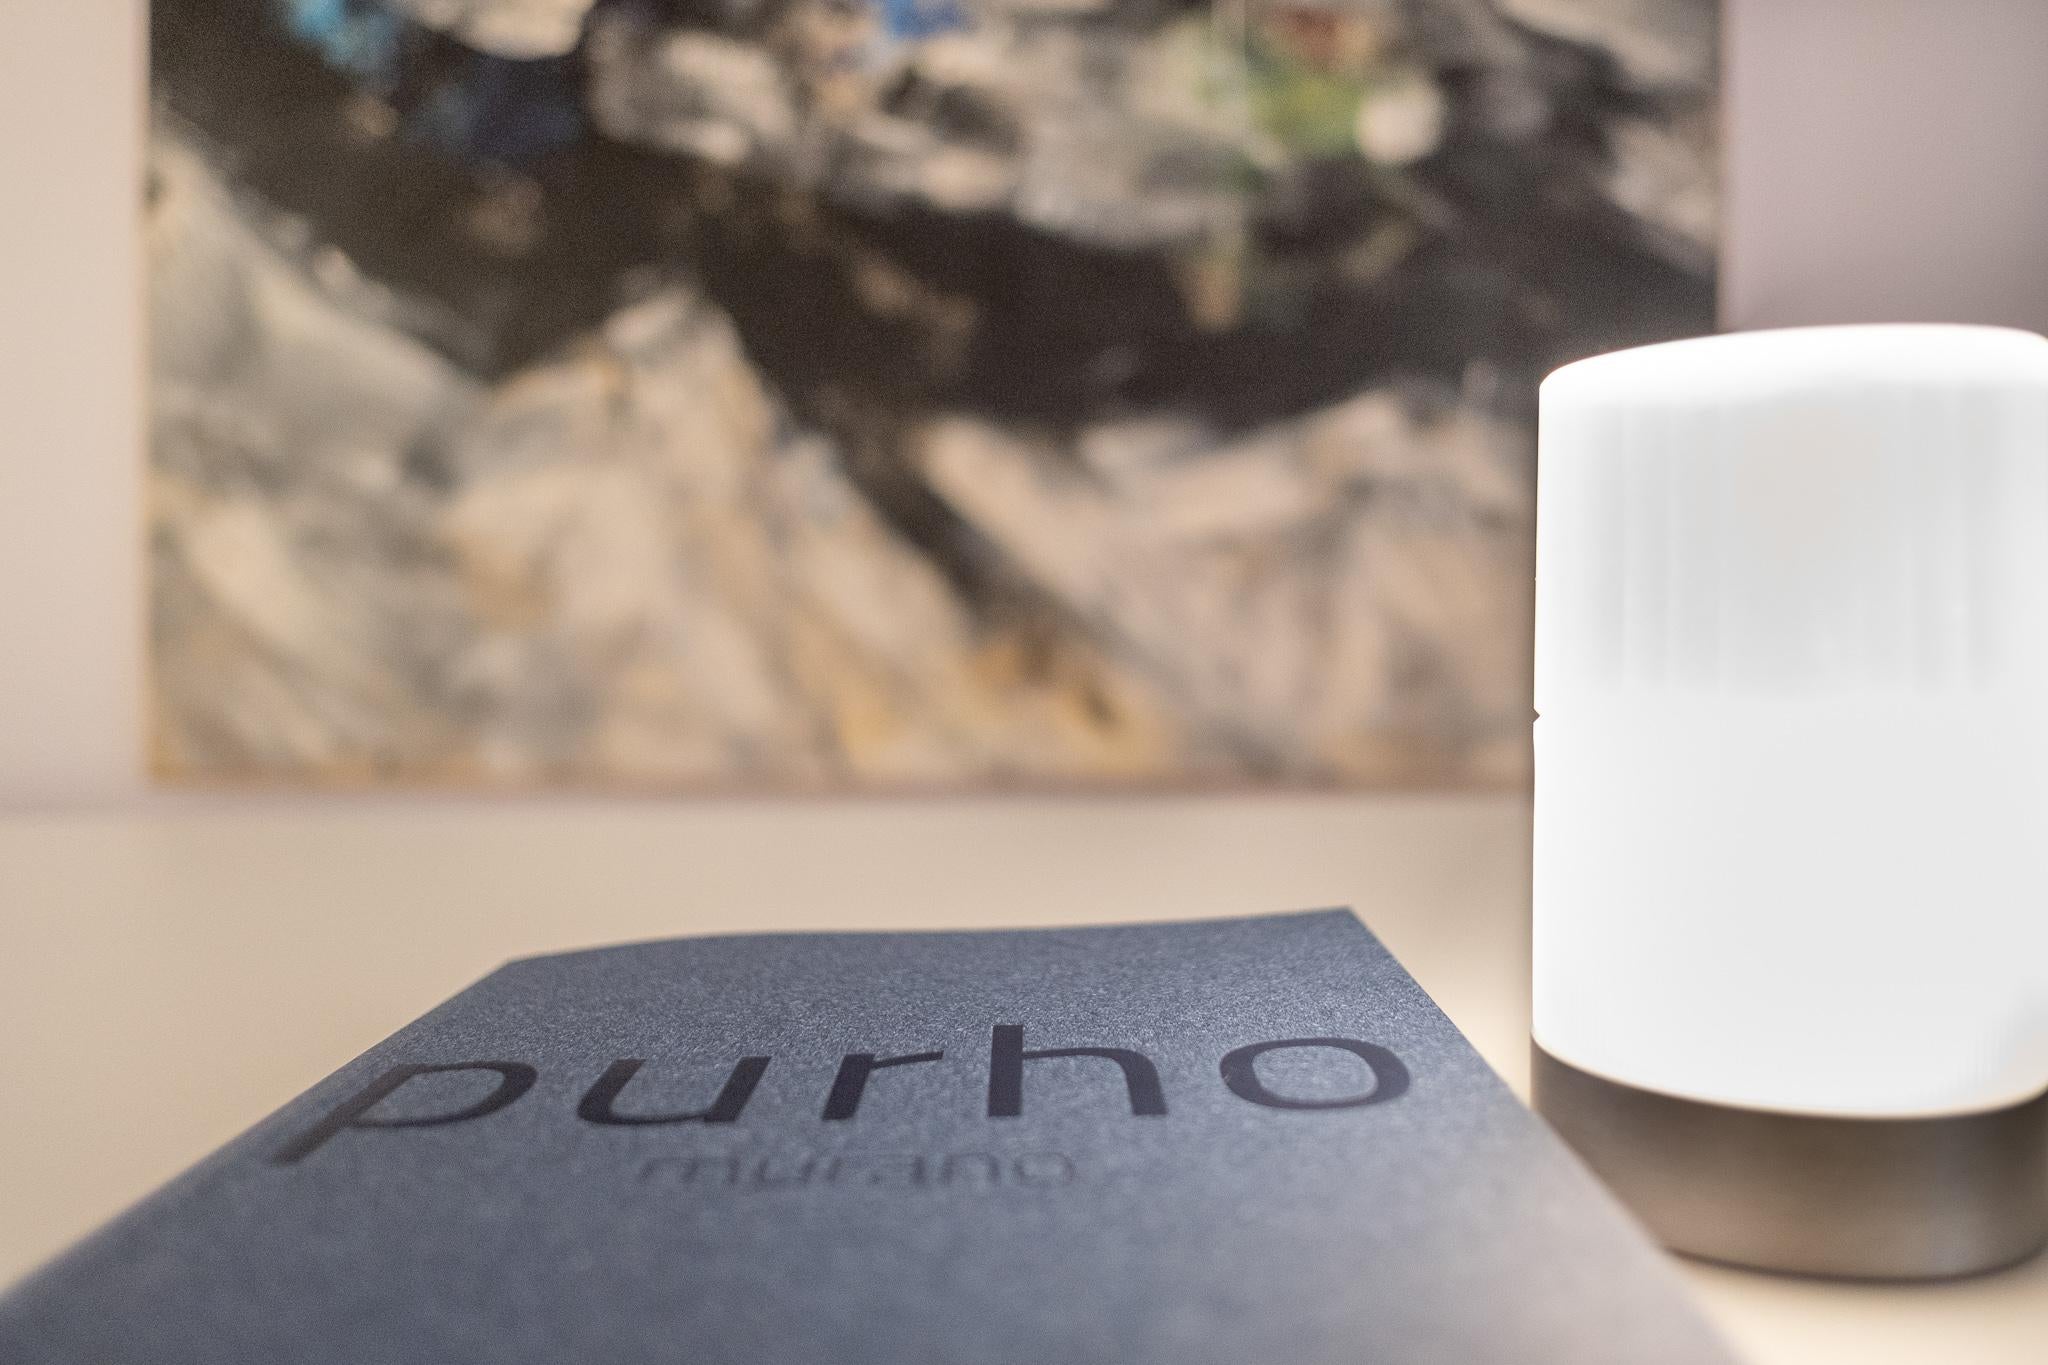 Conçue par Federico Peri pour Purho Murano, Haute soie est une lampe de table rechargeable aux dimensions sobres (diamètre 76 x hauteur 133 mm), entièrement réalisée en verre de Murano.
Faisant partie de la collection Incisioni composée de vases,